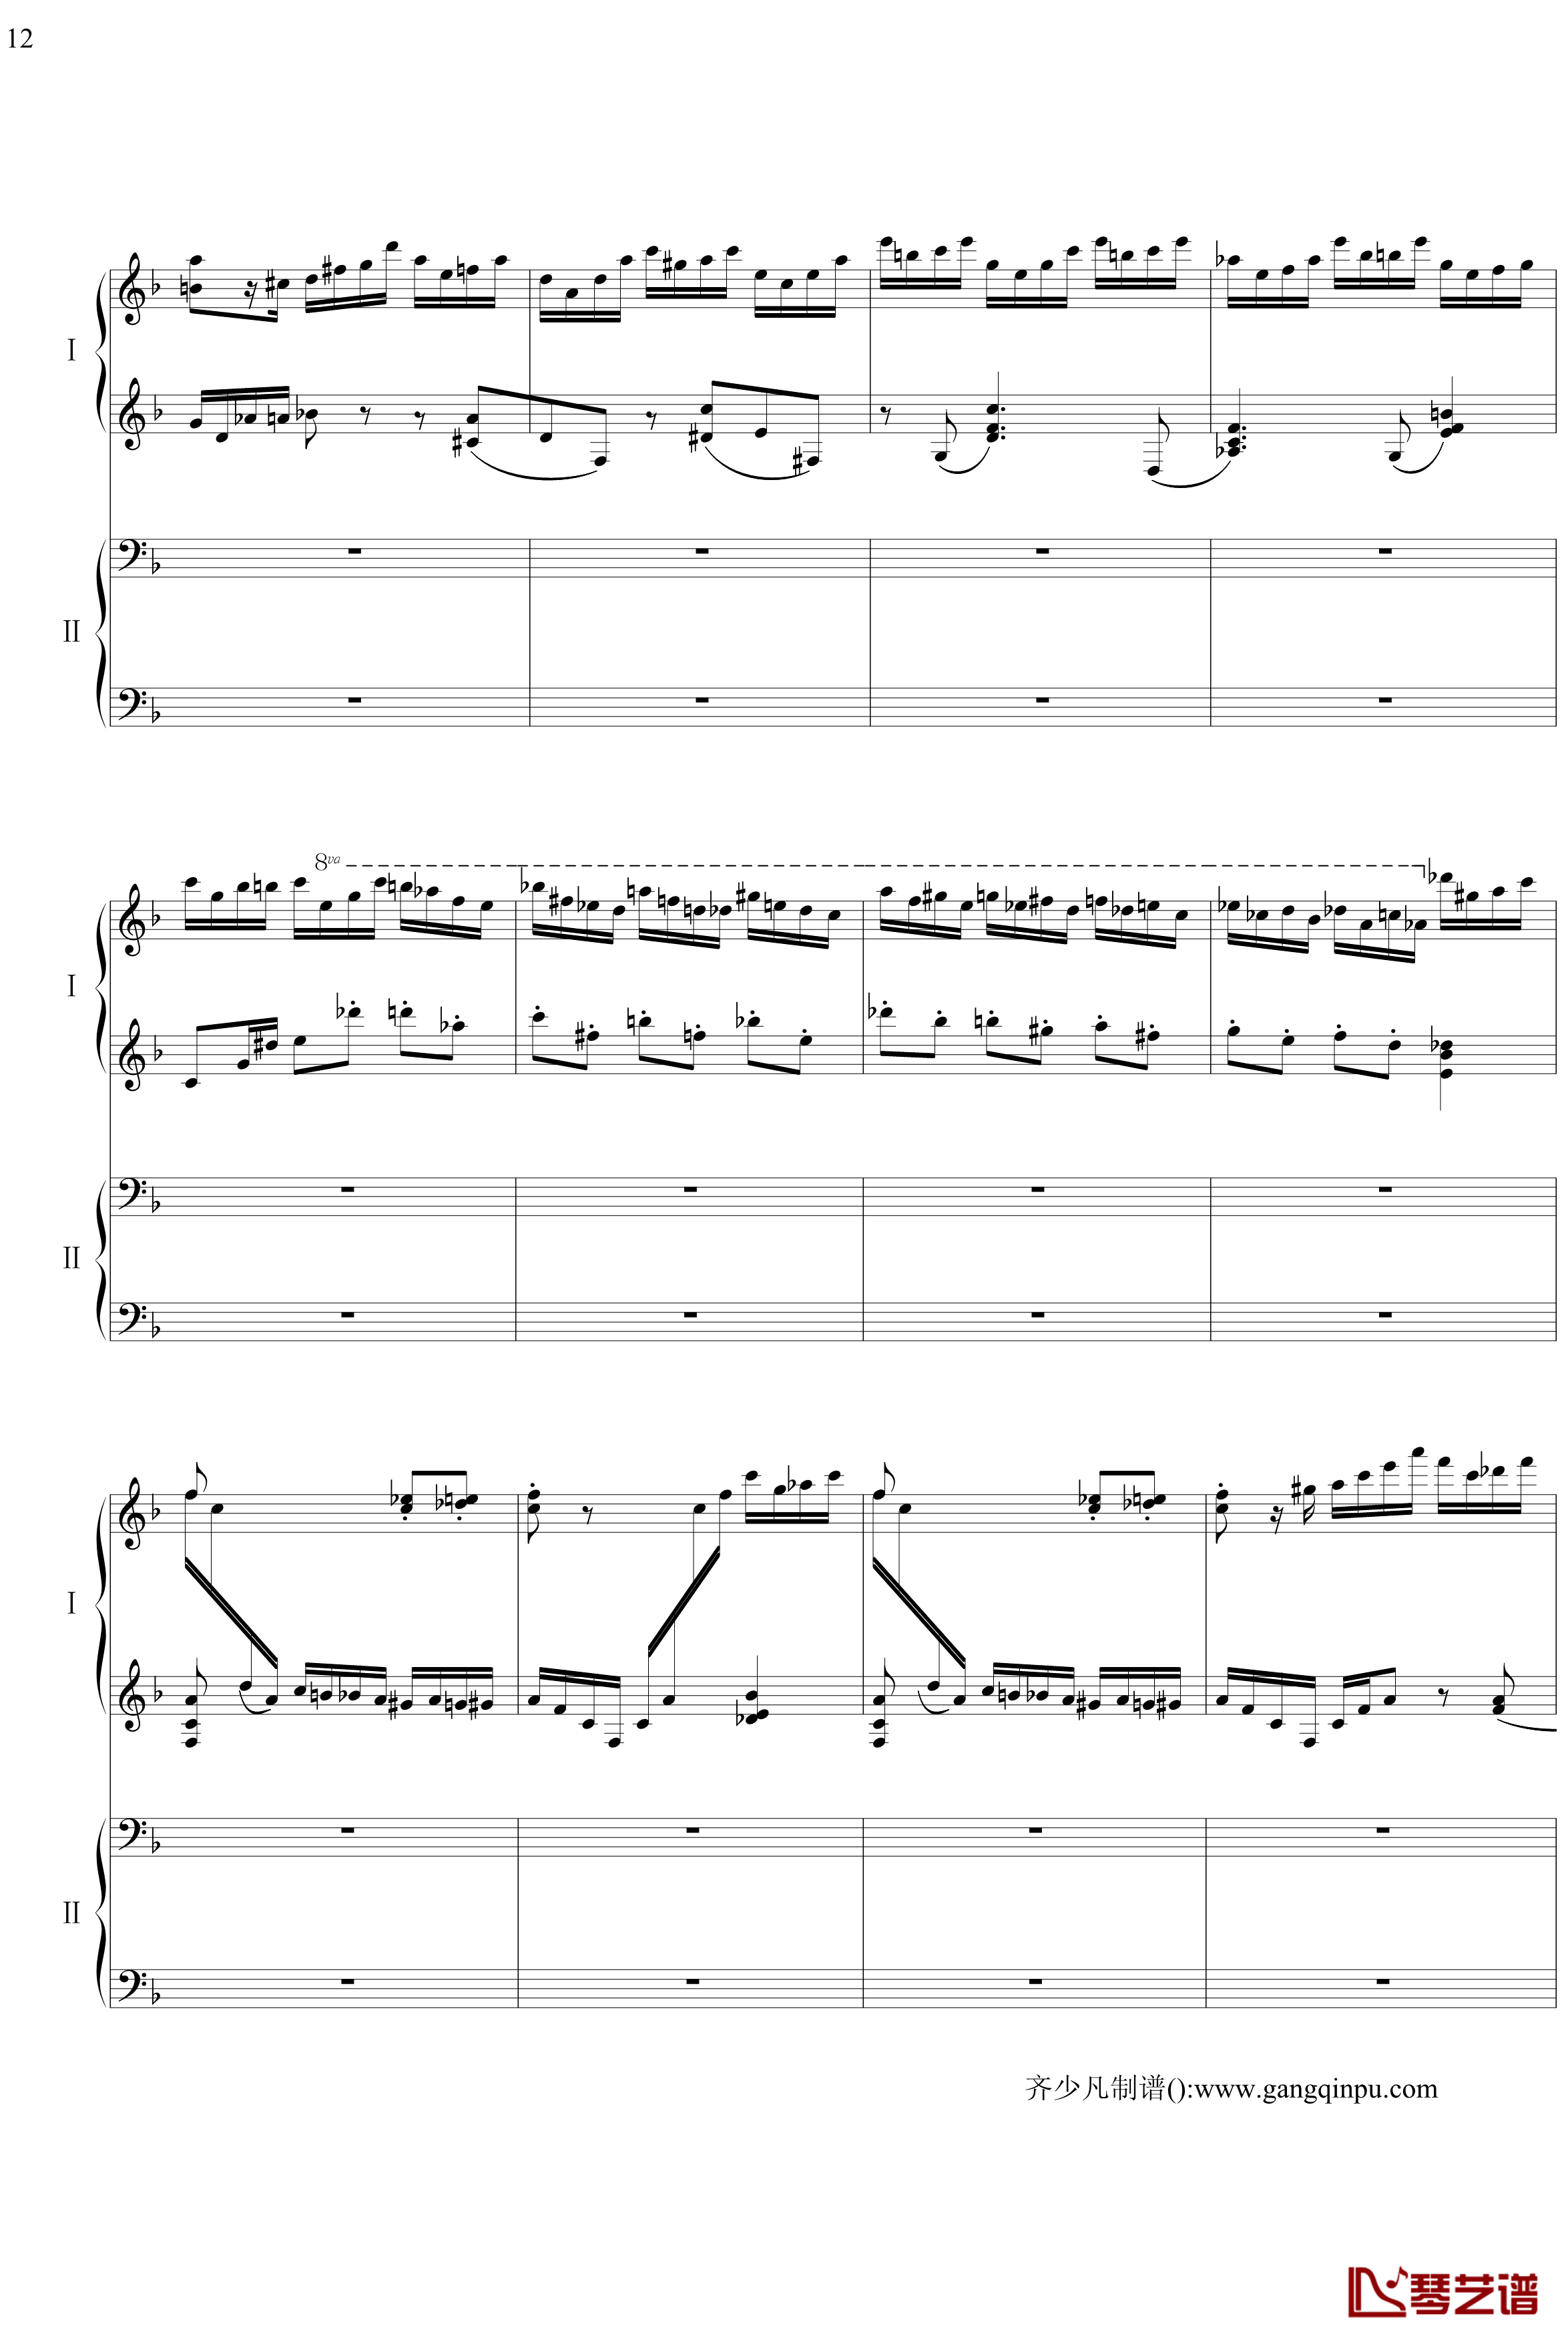 帕格尼尼主题狂想曲钢琴谱-11~18变奏-拉赫马尼若夫12